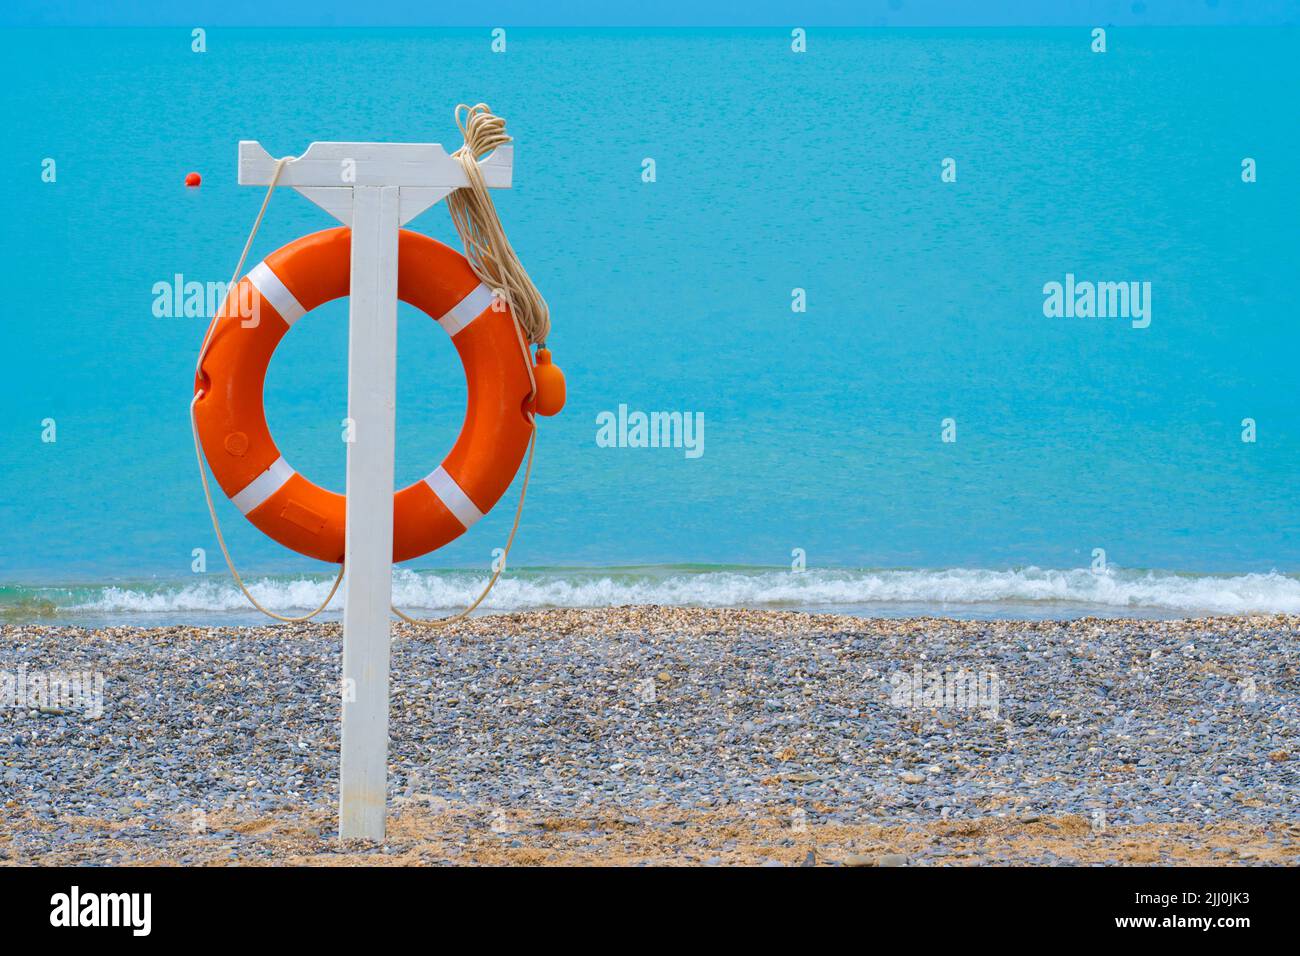 Sicurezza vacanza spiaggia mare lifbuoy resort concetto nuoto sicuro salvataggio, concetto rosso buoy da lifesaver da mare nuoto, cintura di assistenza. Nautica Foto Stock